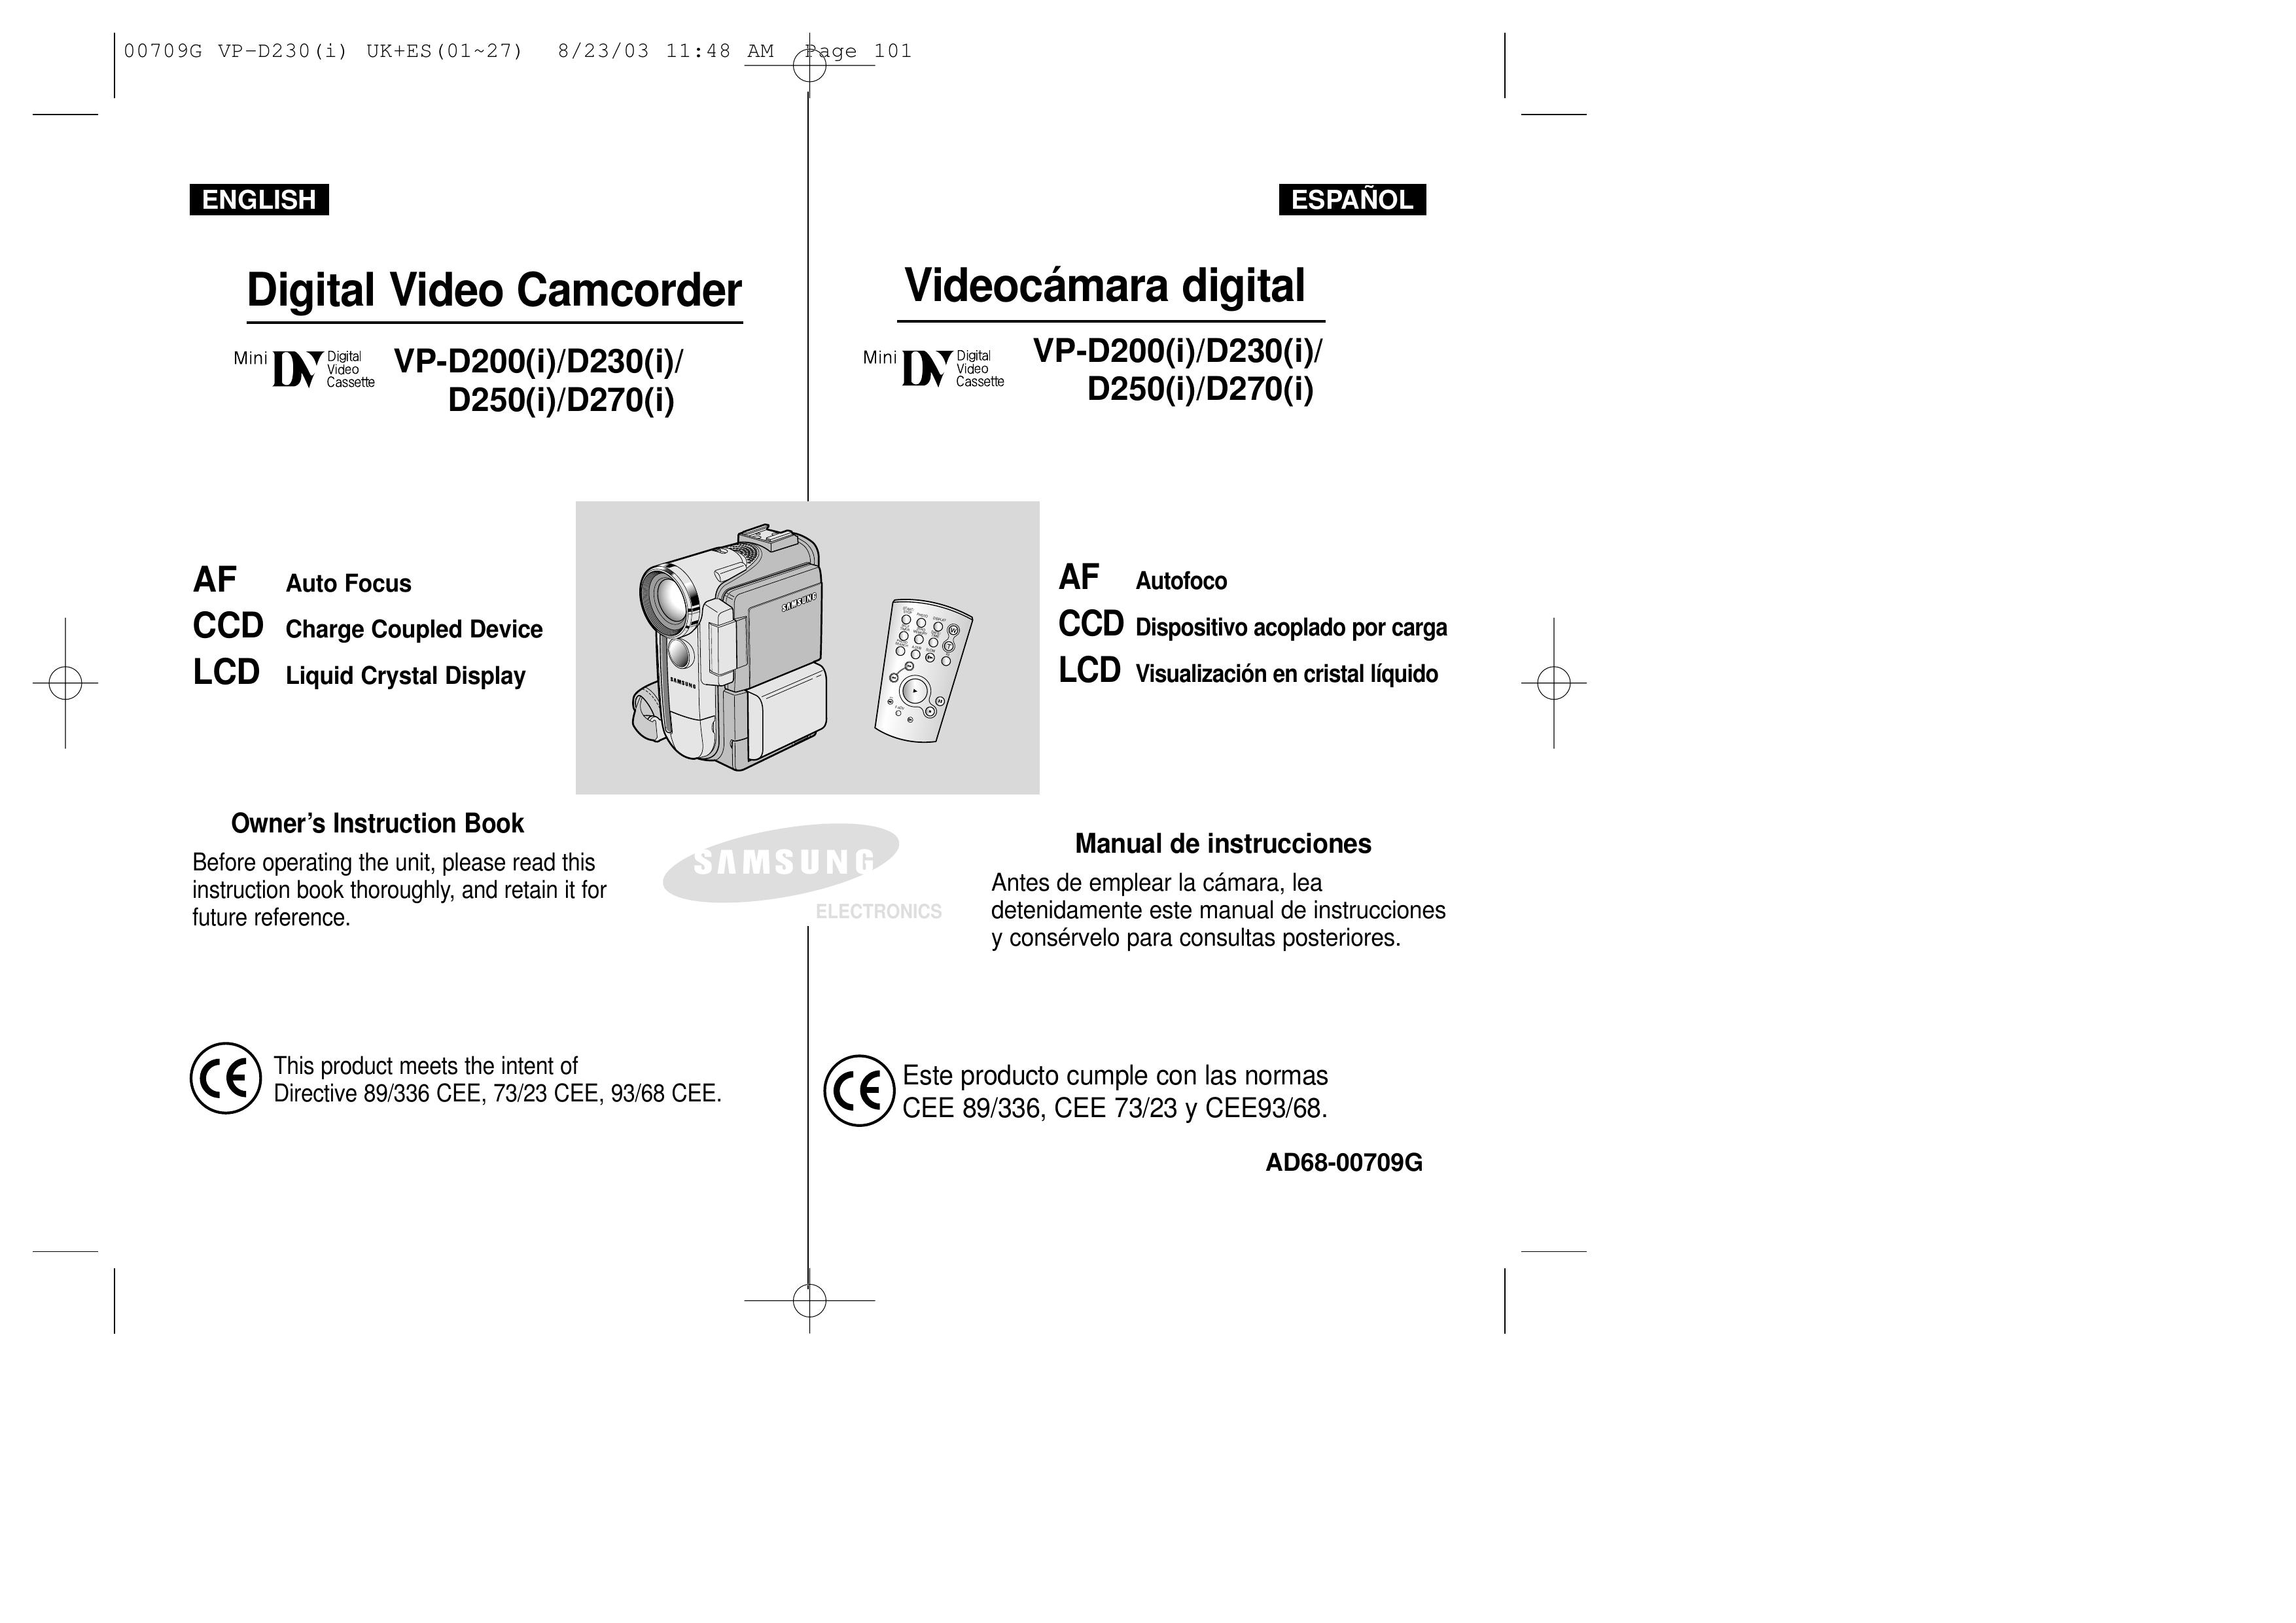 Samsung D270(i) Camcorder User Manual